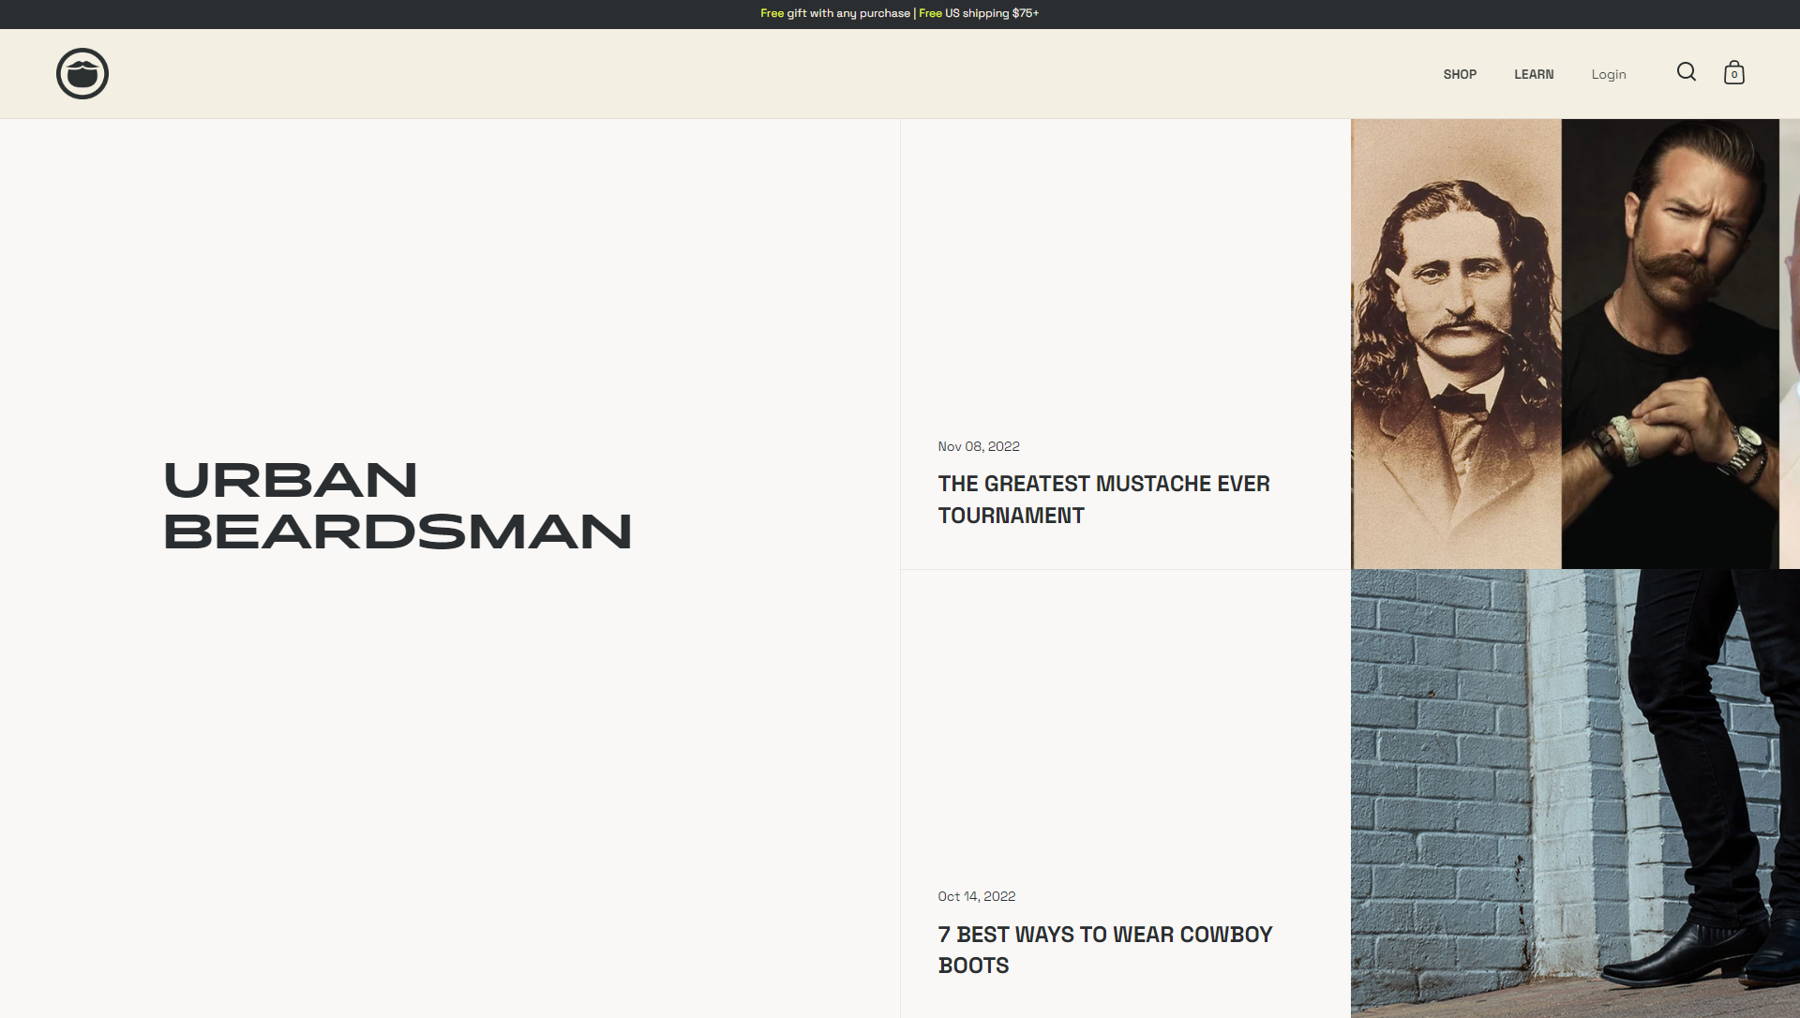 Скриншот Urban Beardsman из коллекции примеров блога.